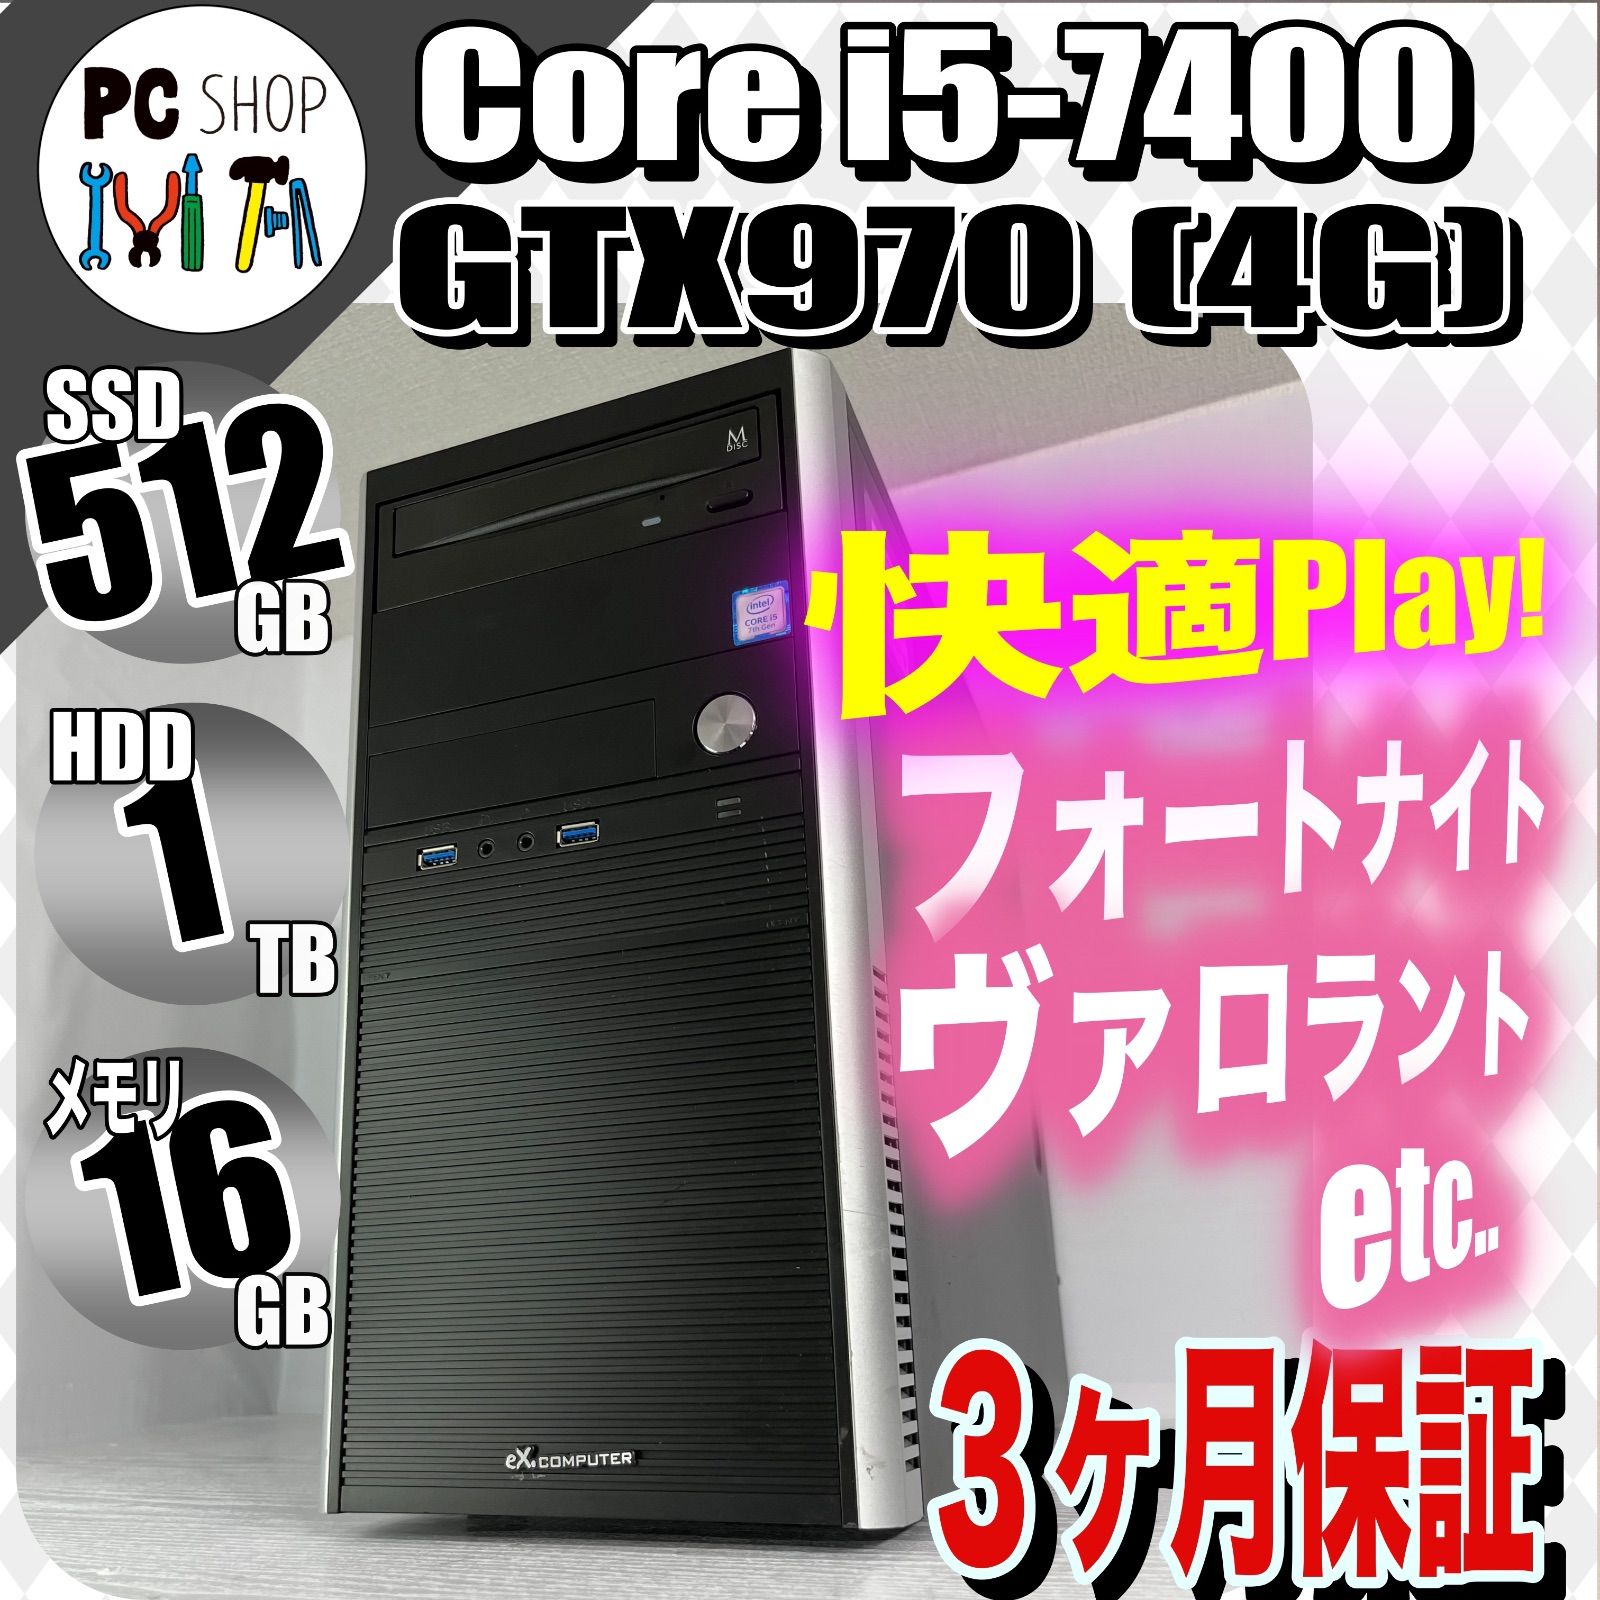 ゲーミングPC/Windows10/GTX970/SSD512GB/HDD1TB - 兵庫県のパソコン